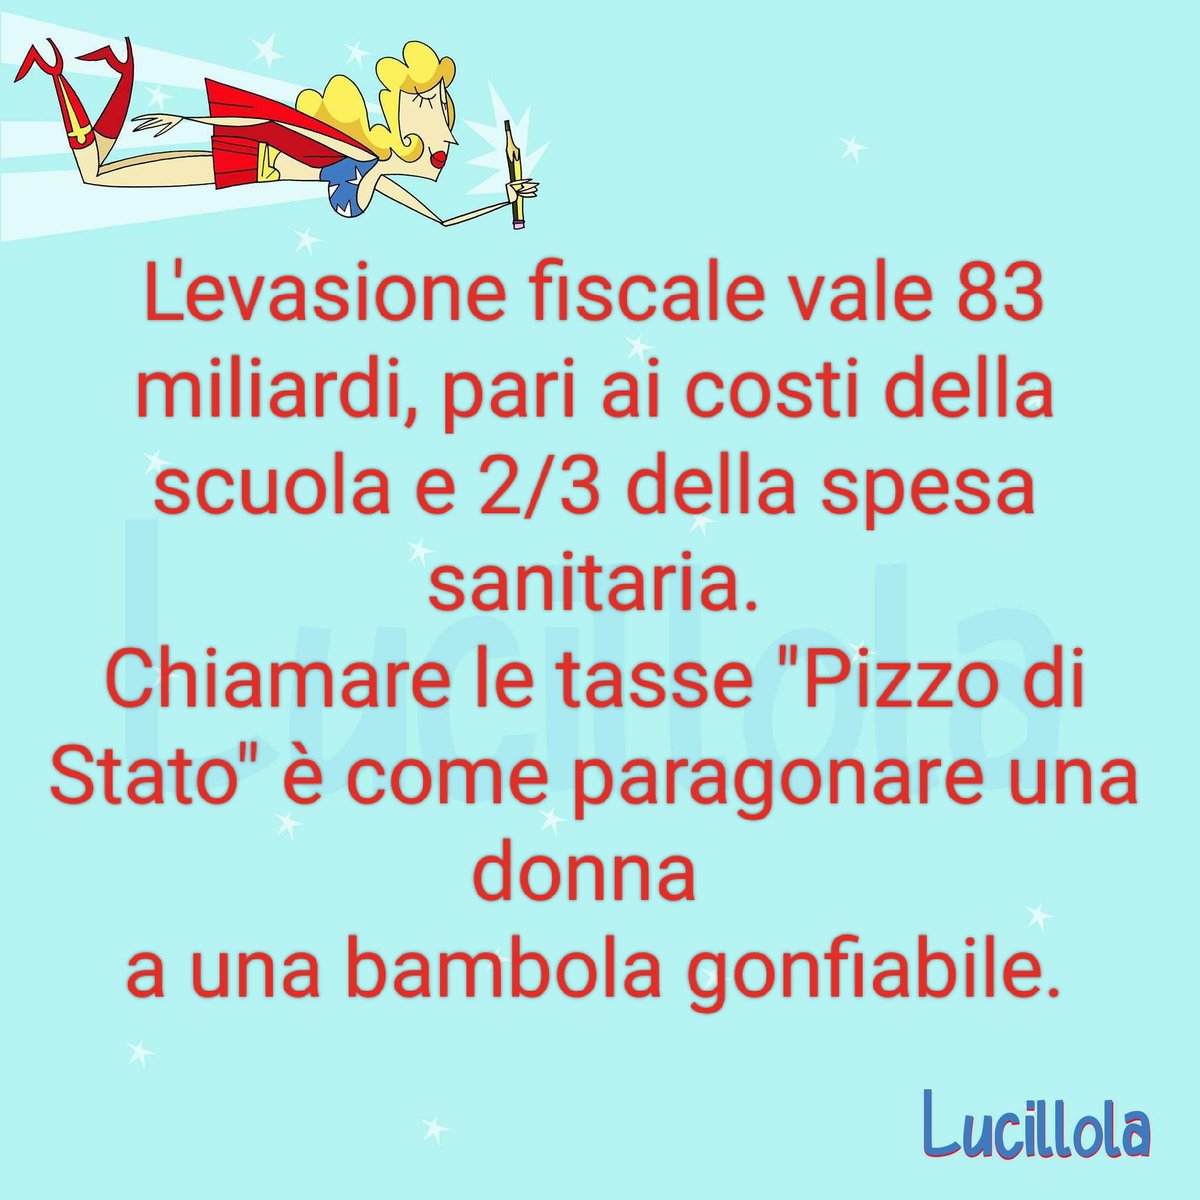 #fisco #tasse #pizzodiStato #Salvini #MELONI_CHE_SQUALLORE #Meloni #25marzo